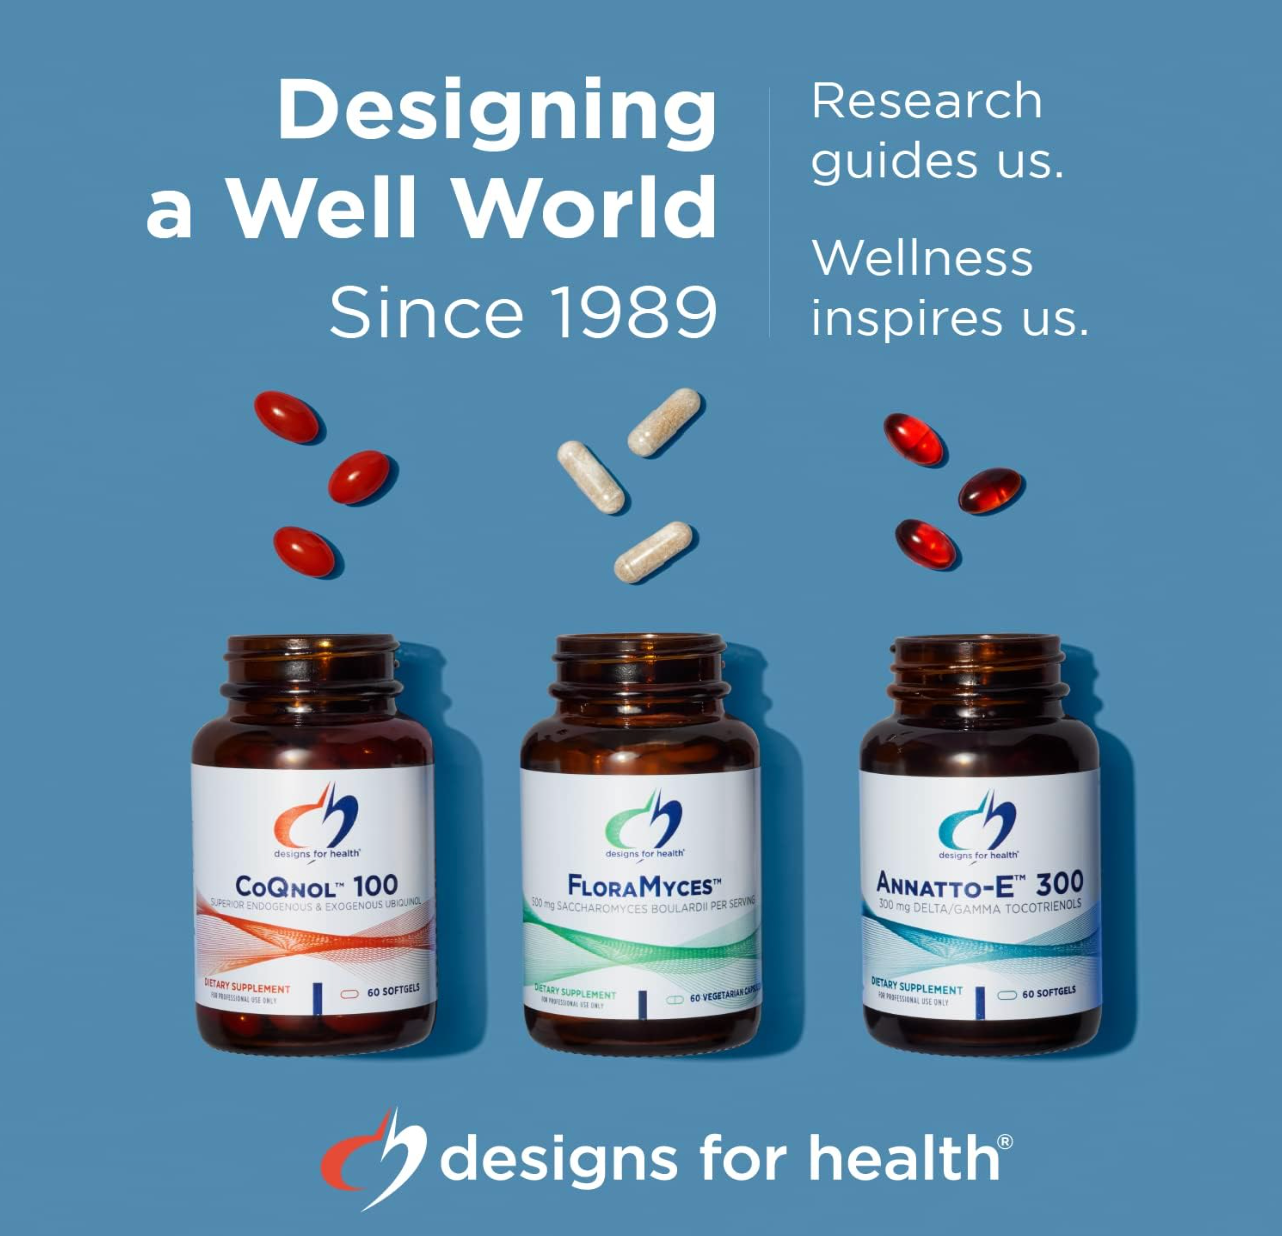 Designs for health organic pure pea powder